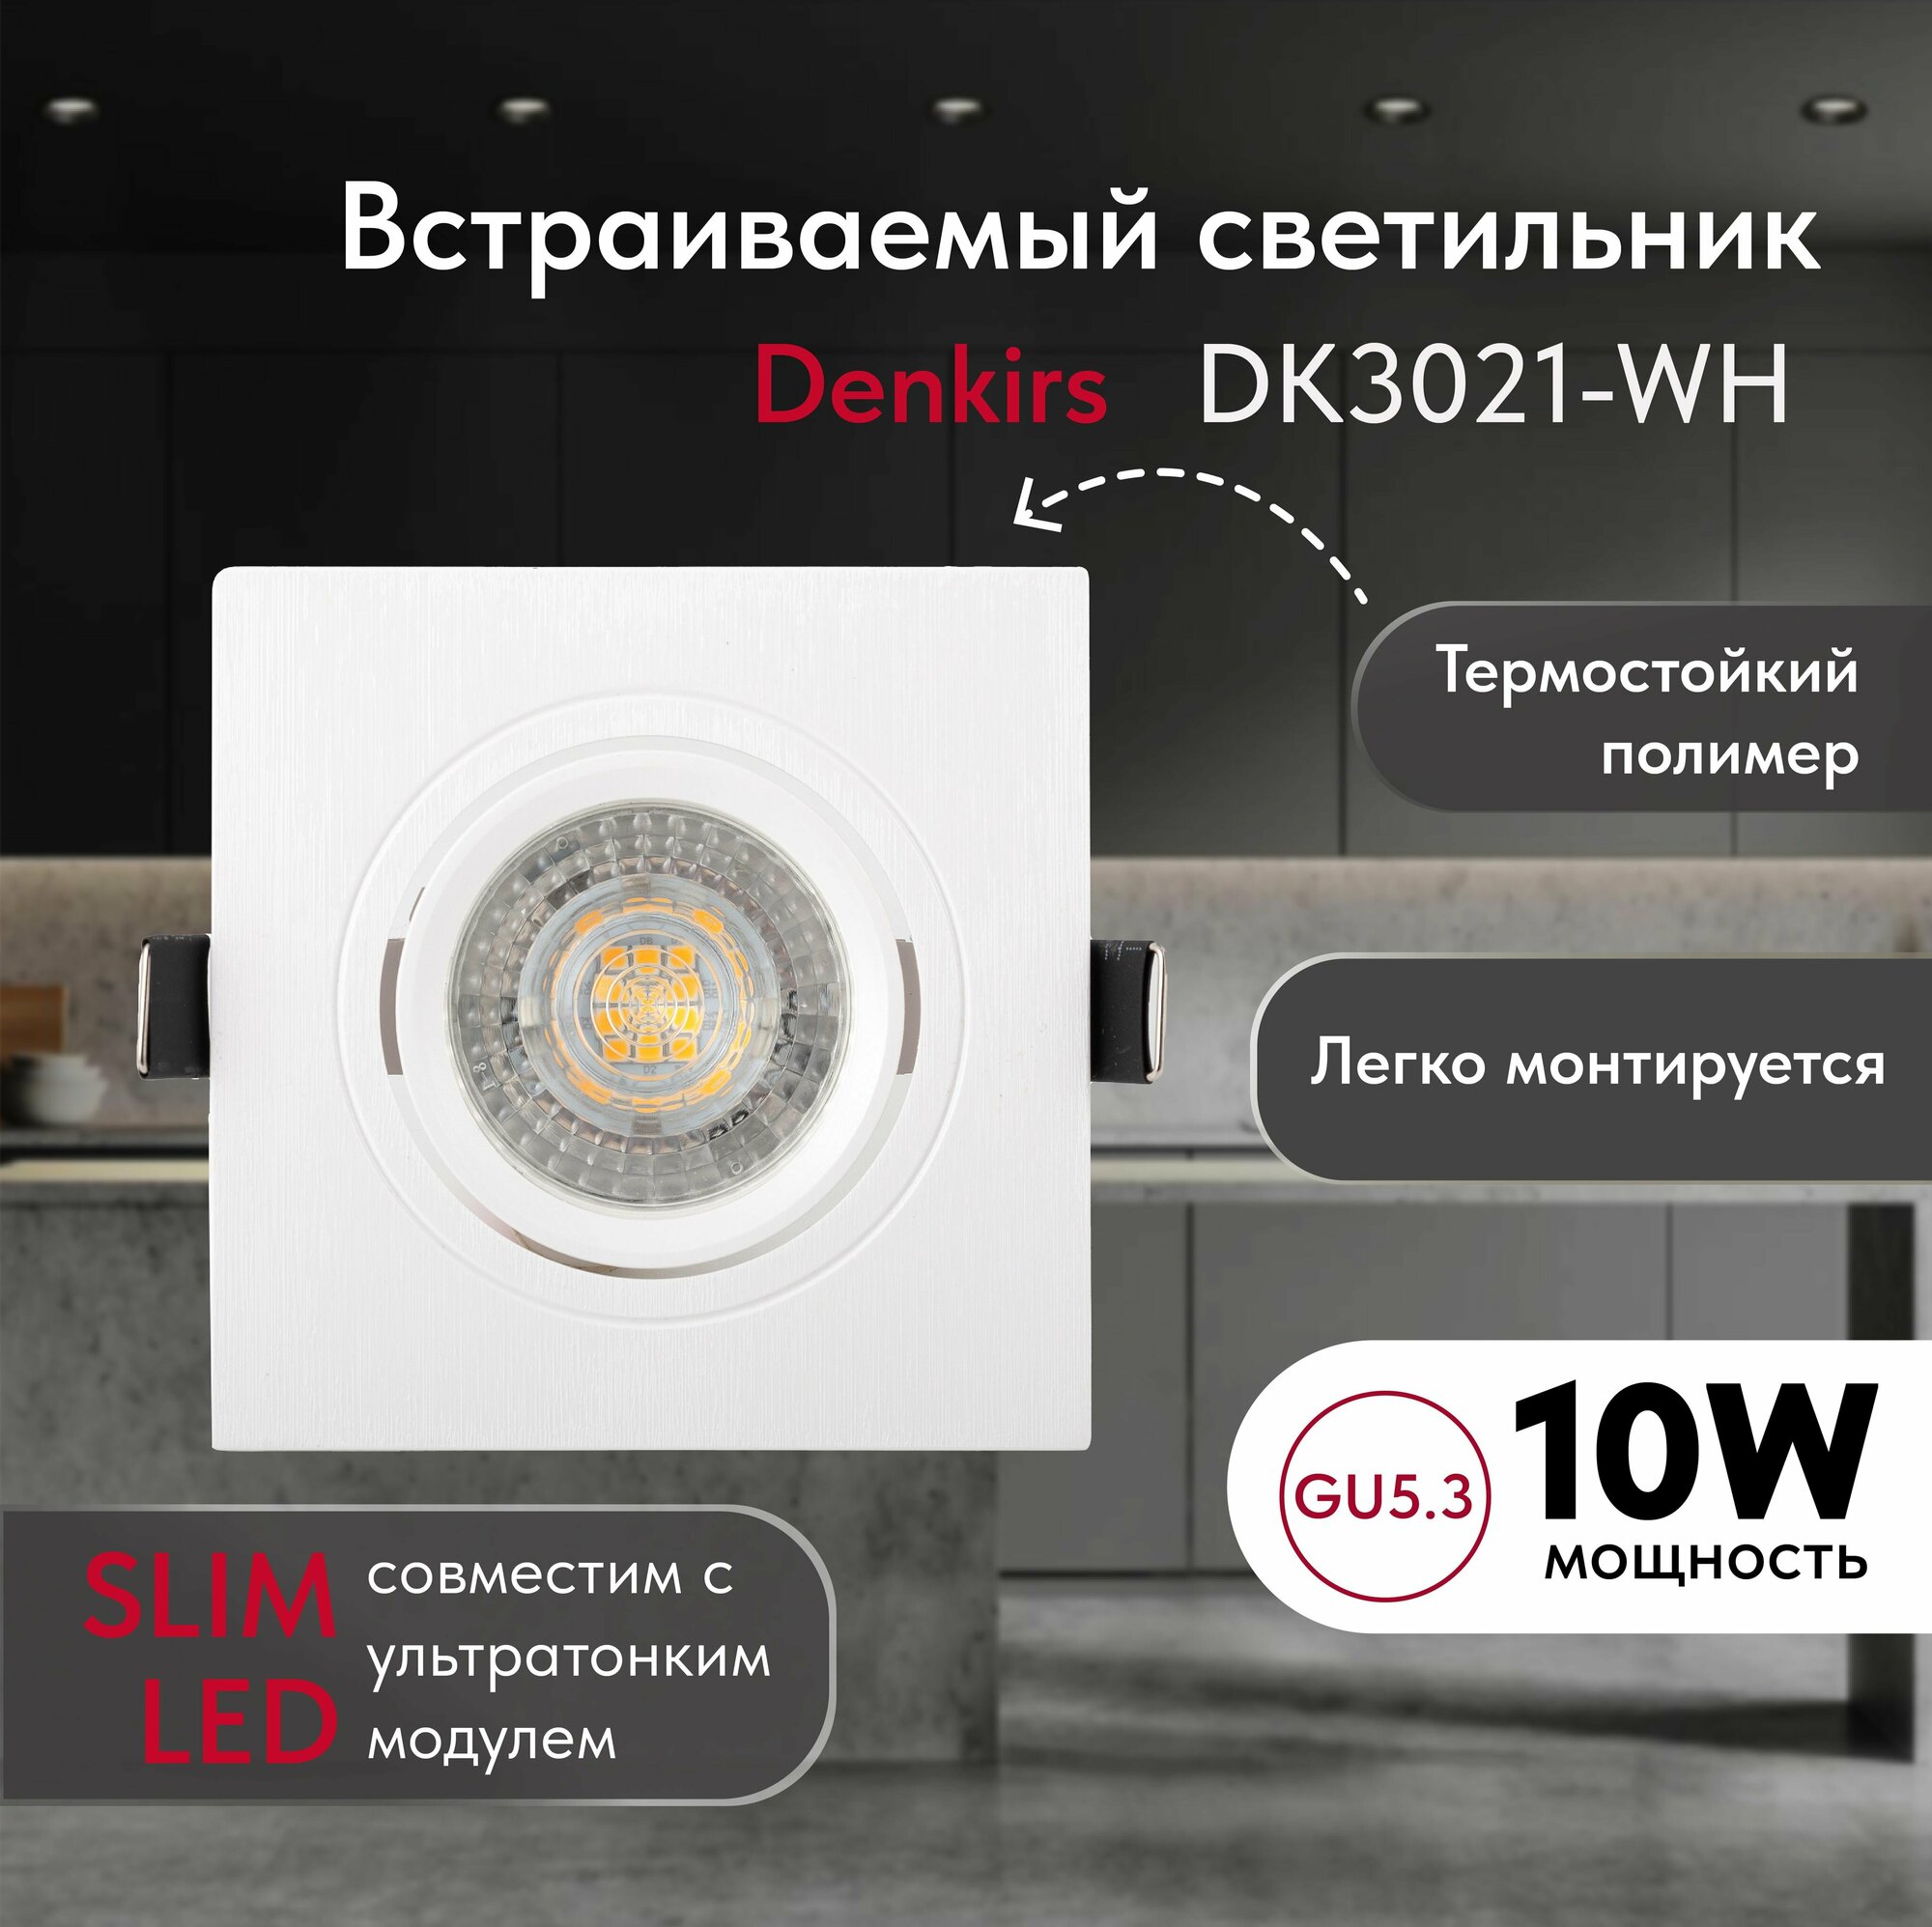 Светильник потолочный встраиваемый DENKIRS DK3021-WH, IP 20, 10 Вт, GU5.3, LED, белый, пластик